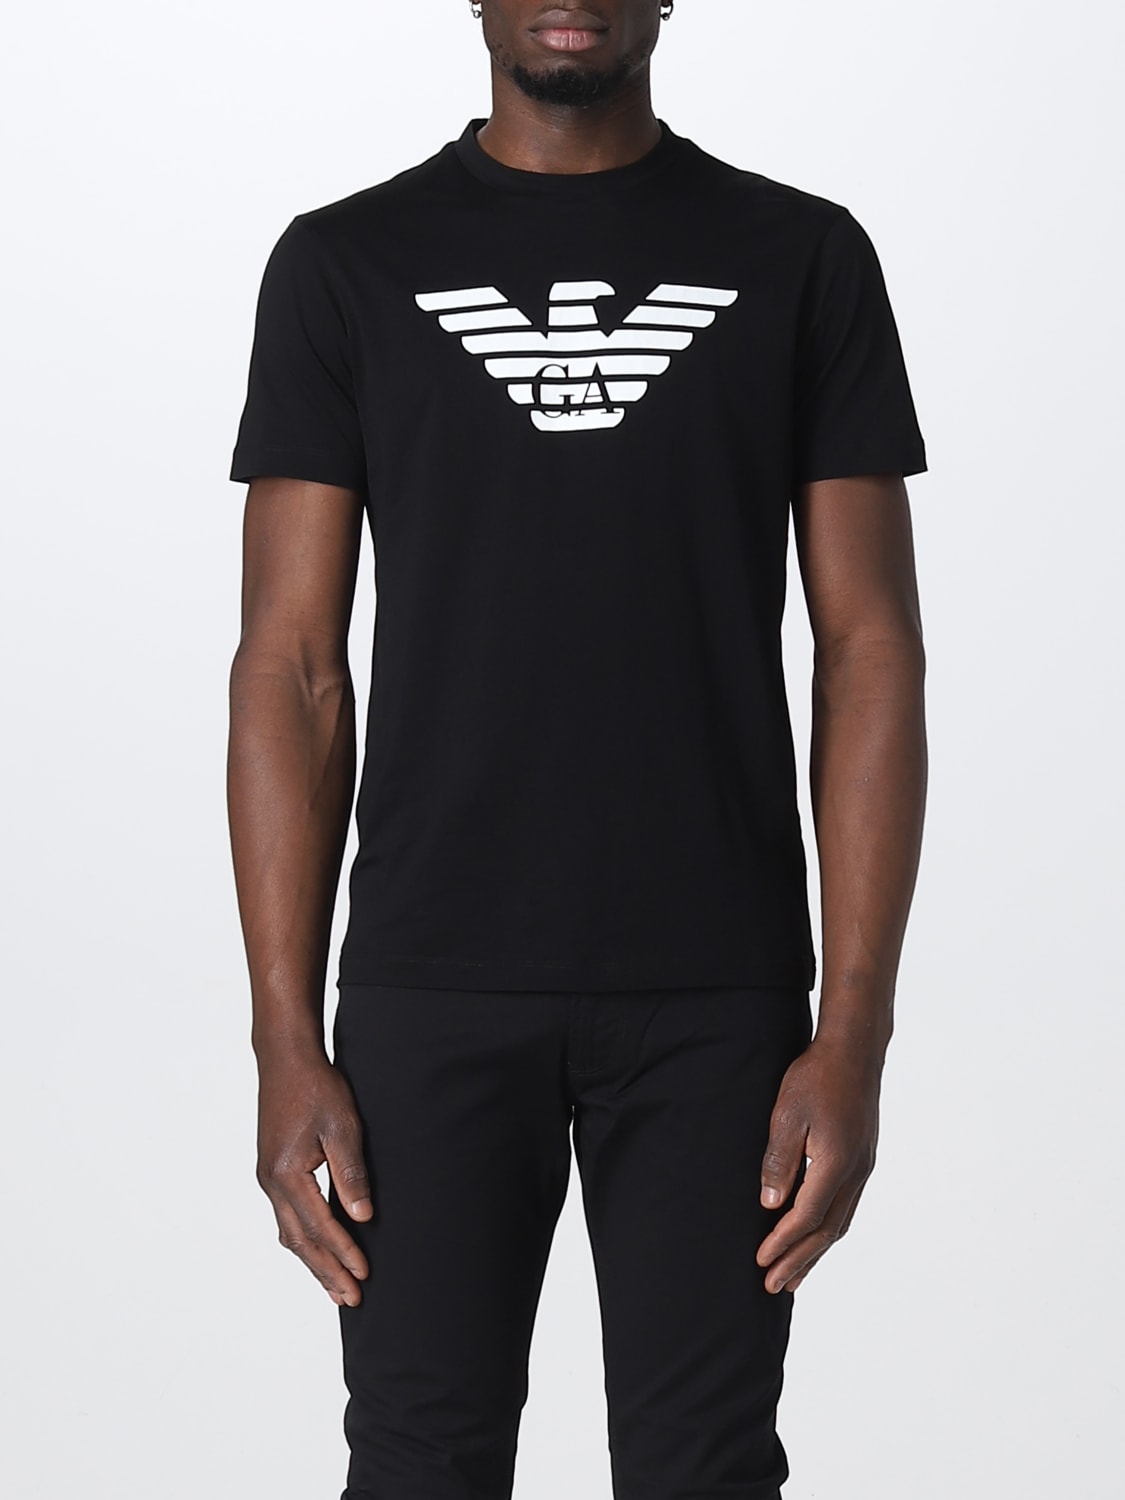 EMPORIO ARMANI: cotton T-shirt - Black | Emporio Armani 8N1TN51JPZZ online on GIGLIO.COM